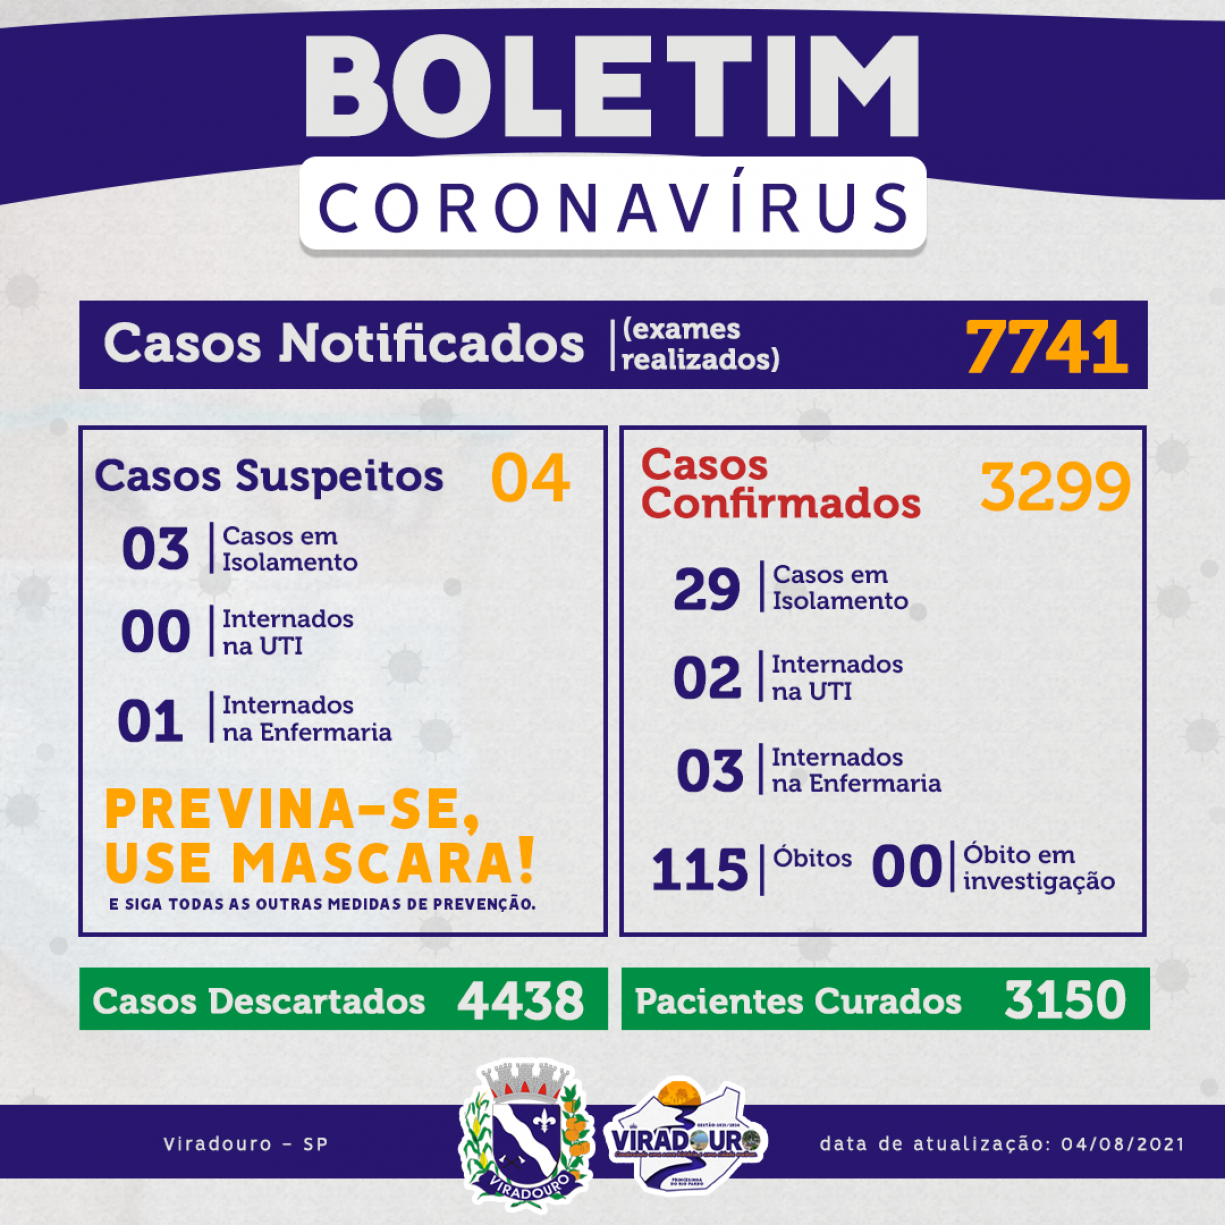 CORONAVÍRUS: BOLETIM EPIDEMIOLÓGICO (ATUALIZAÇÃO 04/08/2021)